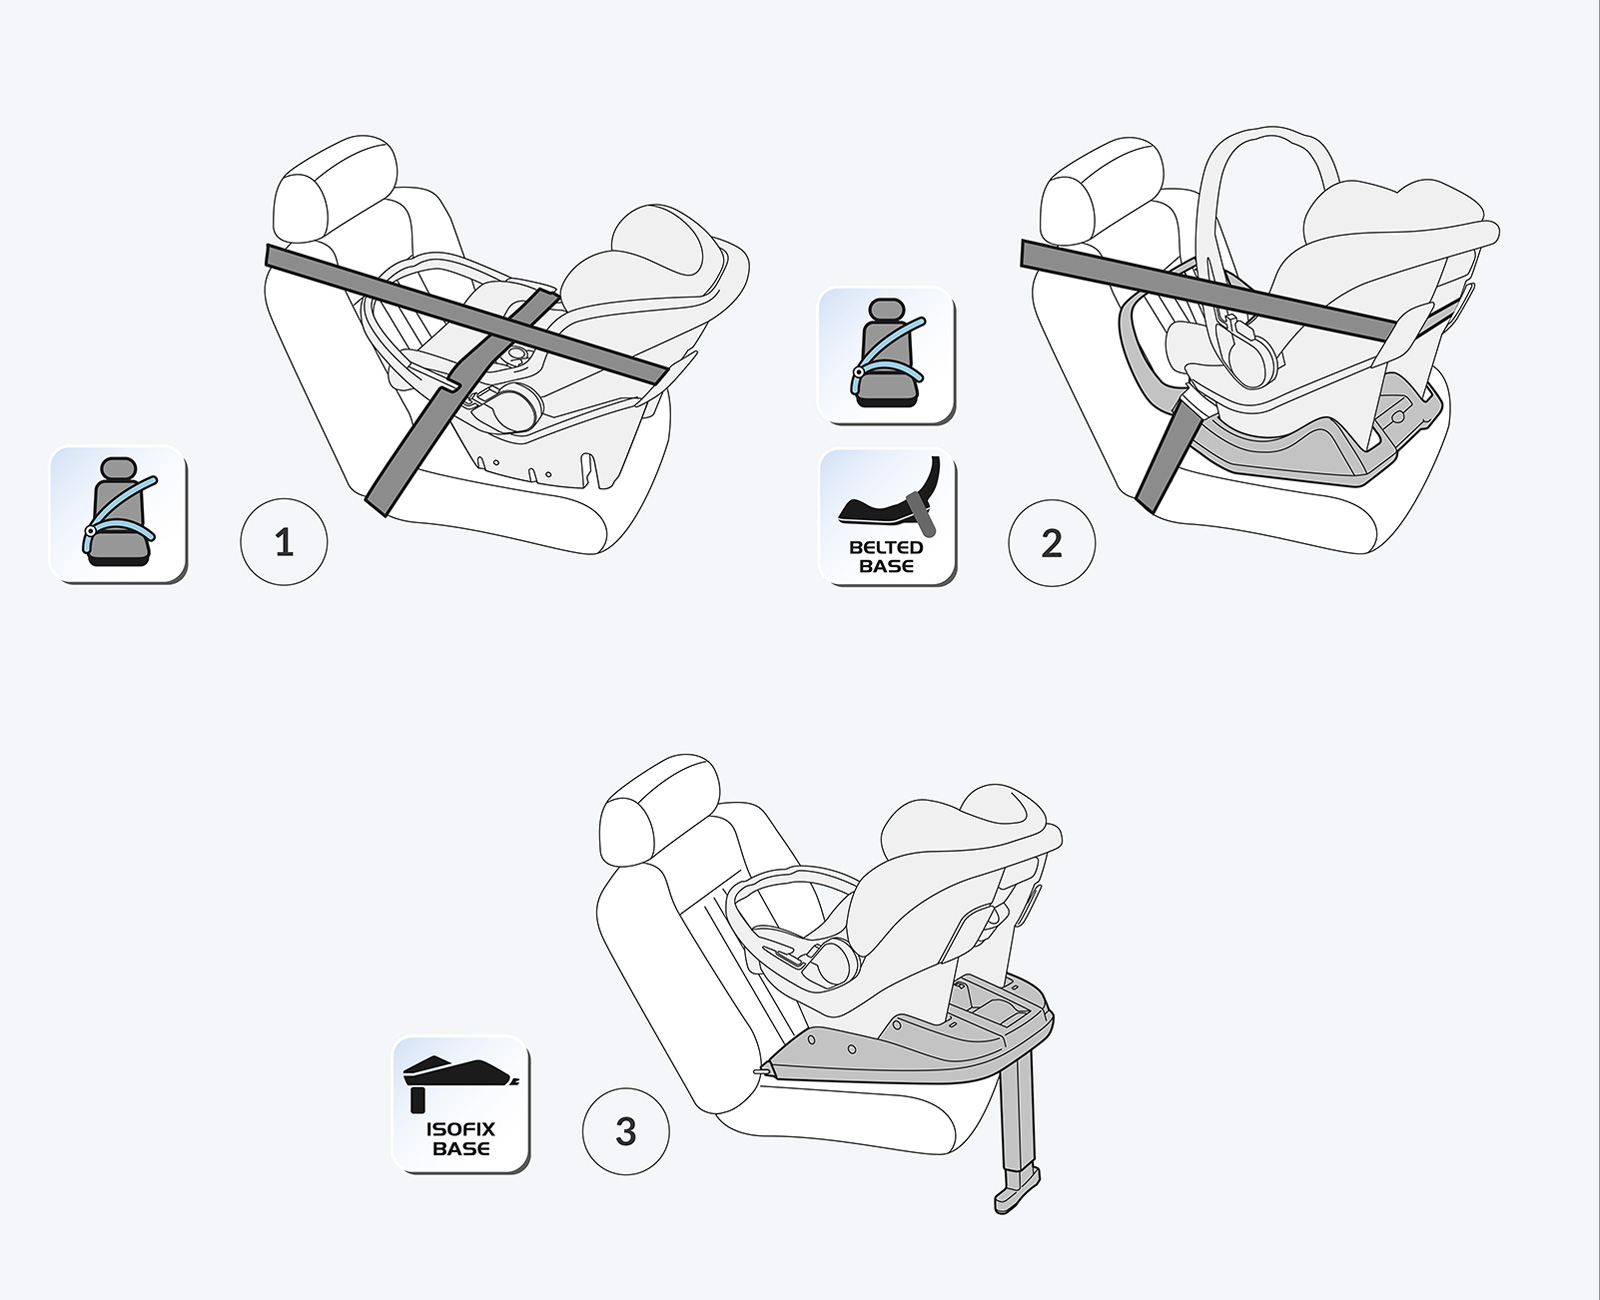 Как крепится детское кресло: виды безопасных креплений и их особенности. Самое безопасное место в машине для ребенка в кресле Как крепится автокресло в машине